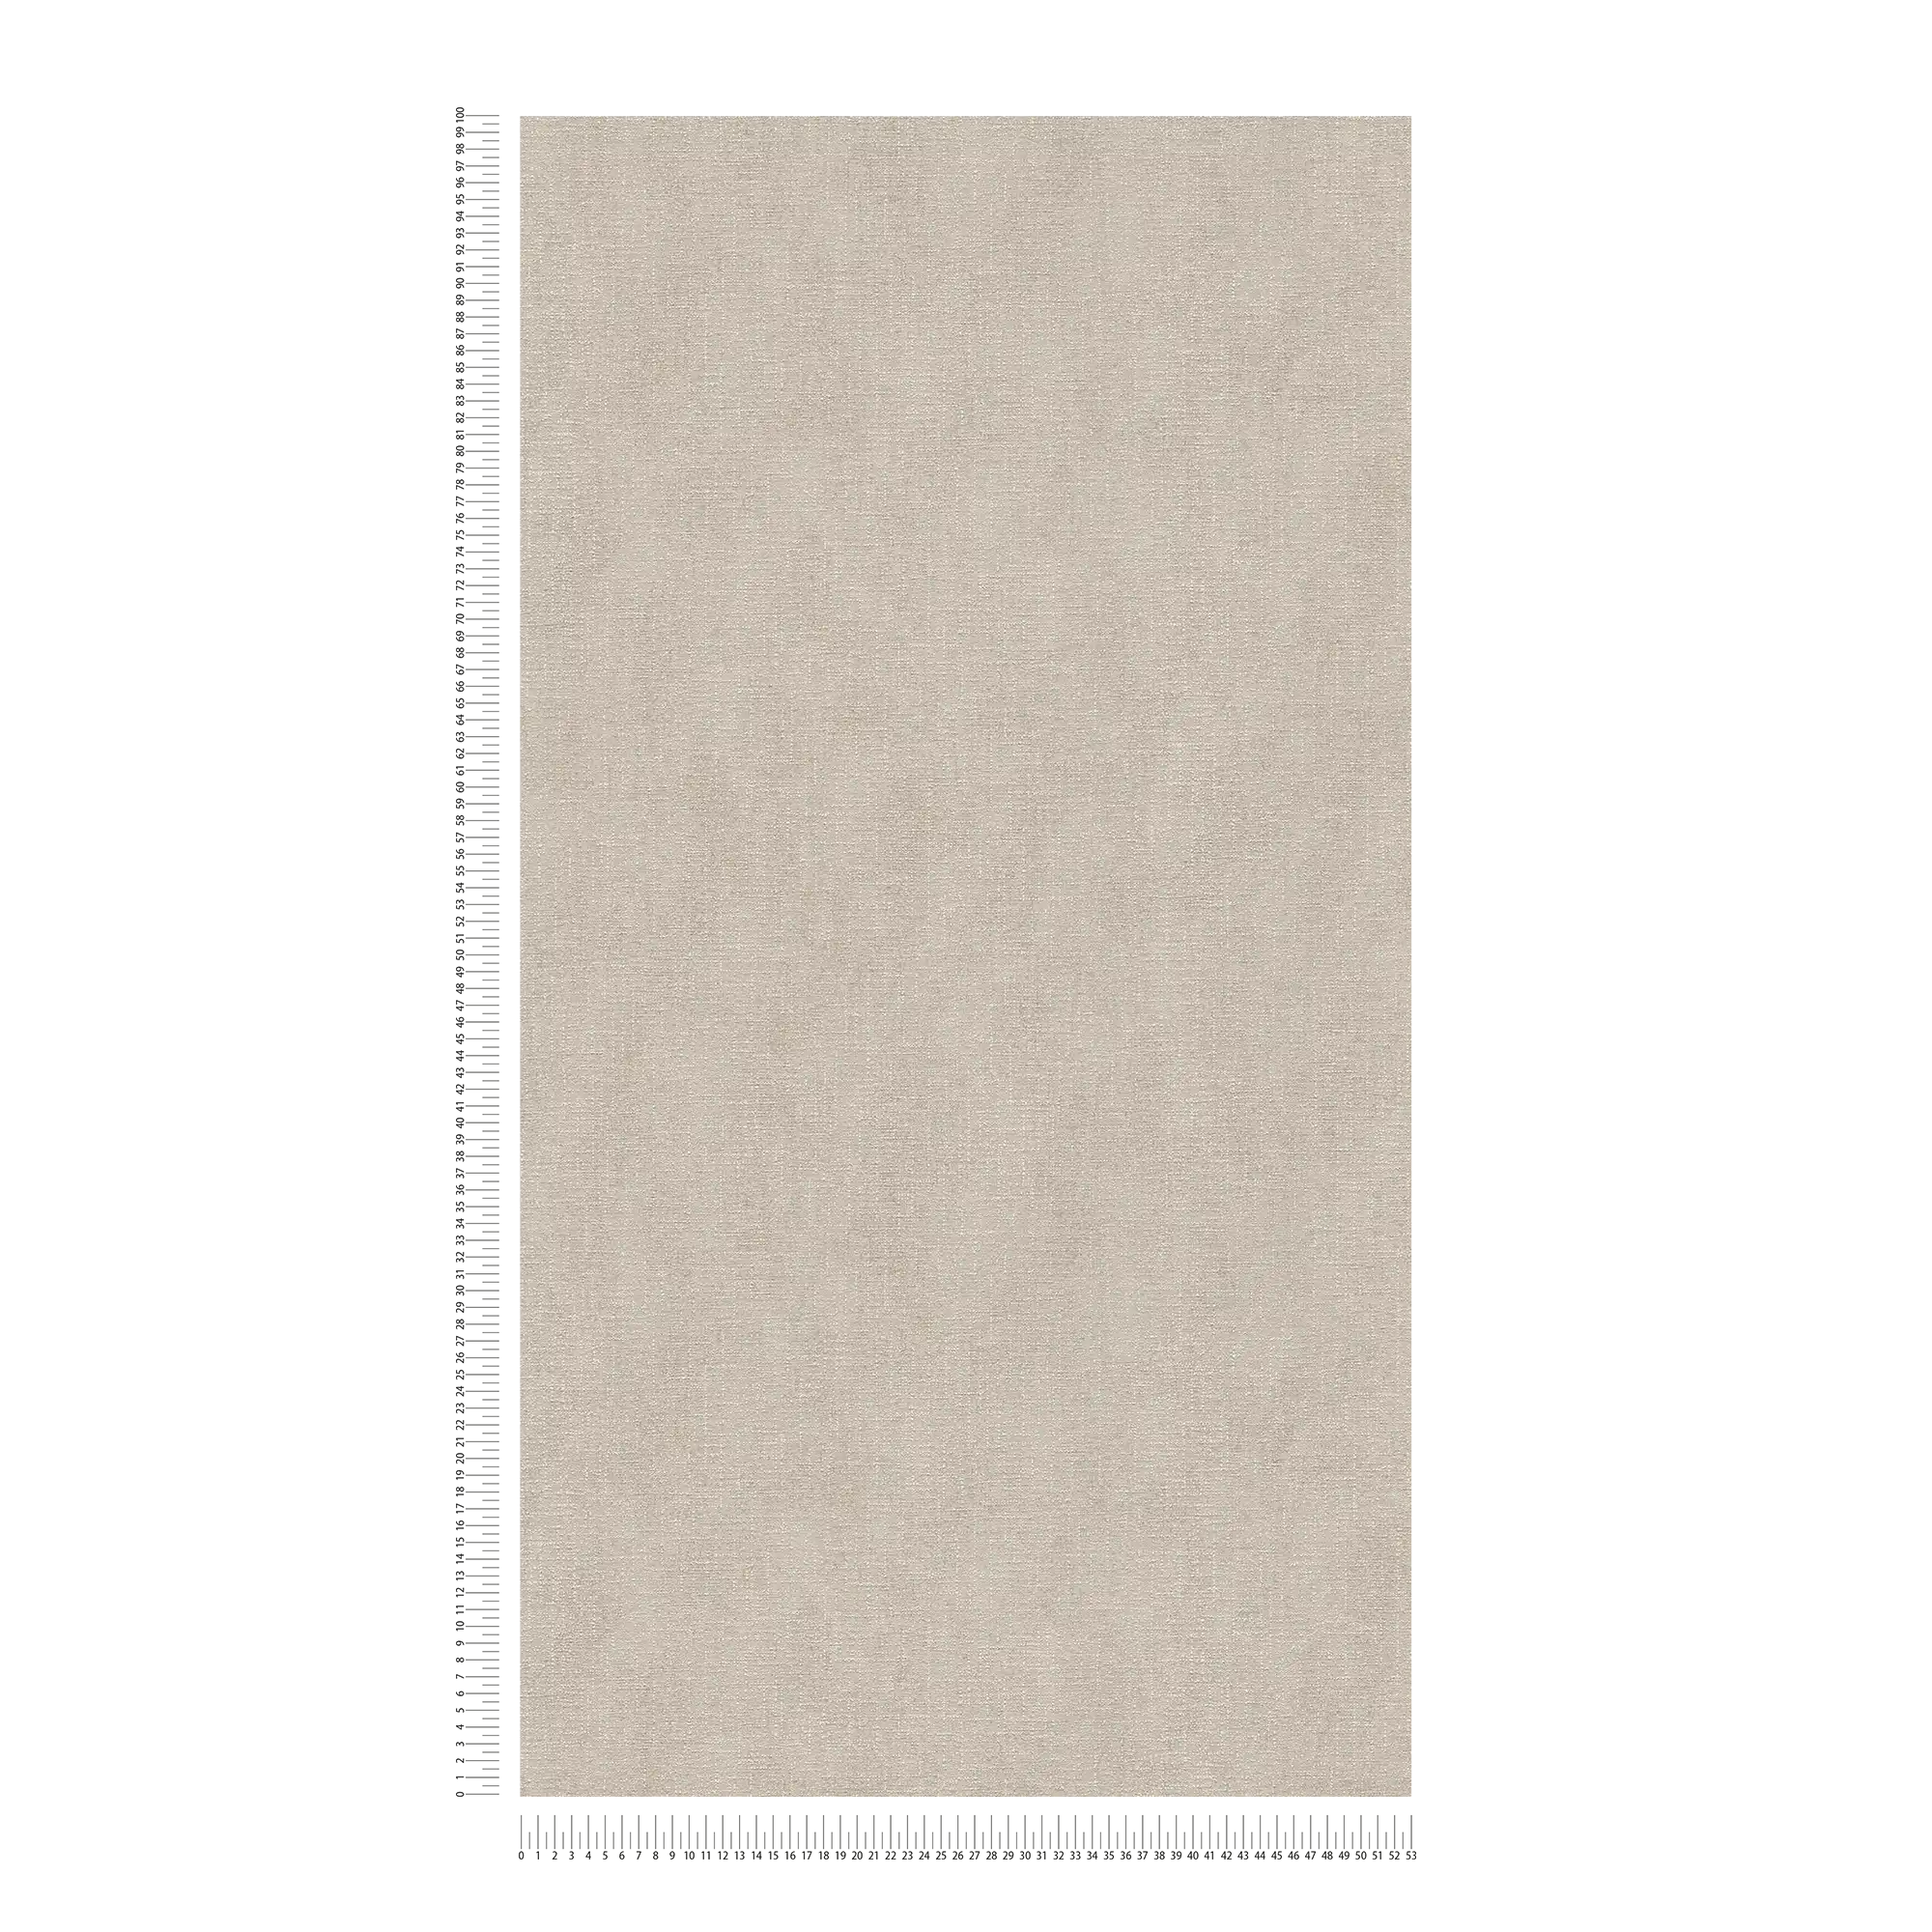             Carta da parati in tessuto non tessuto grigio chiaro con finitura shimmer e motivo strutturato - Grigio
        